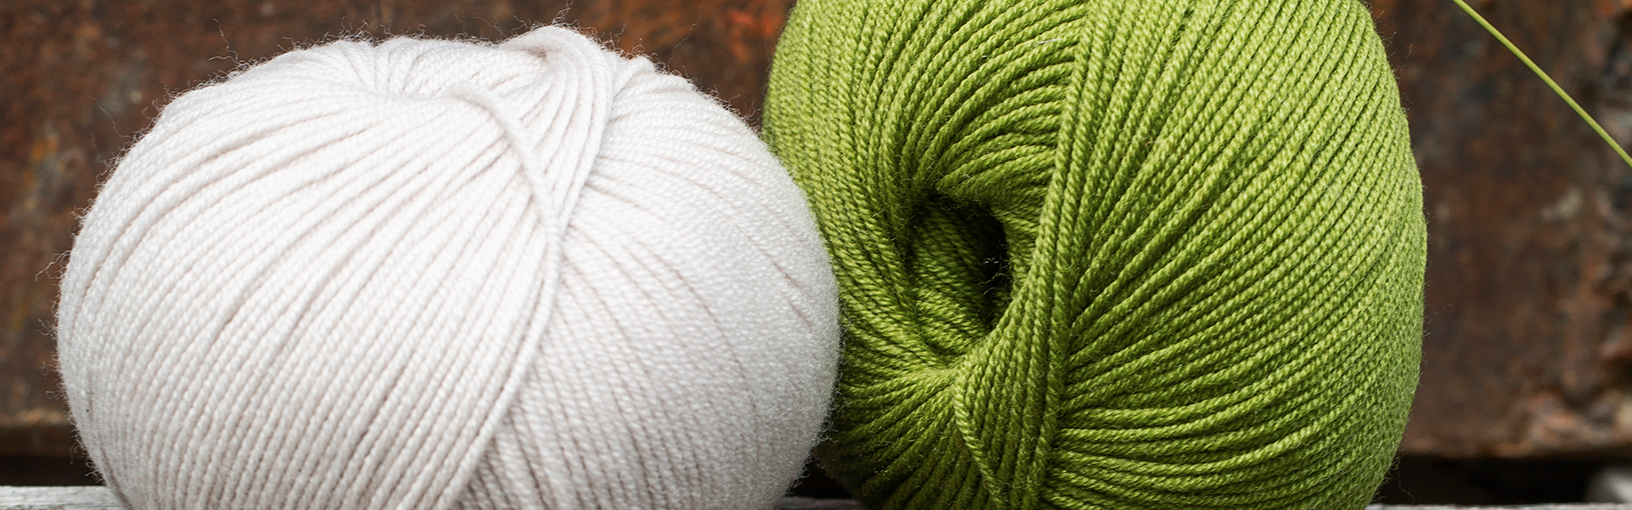 Garn af høj kvalitet til strikning, hækling og filtning LANA GROSSA<br> uld & garn | Linea Pura - Organisk garn